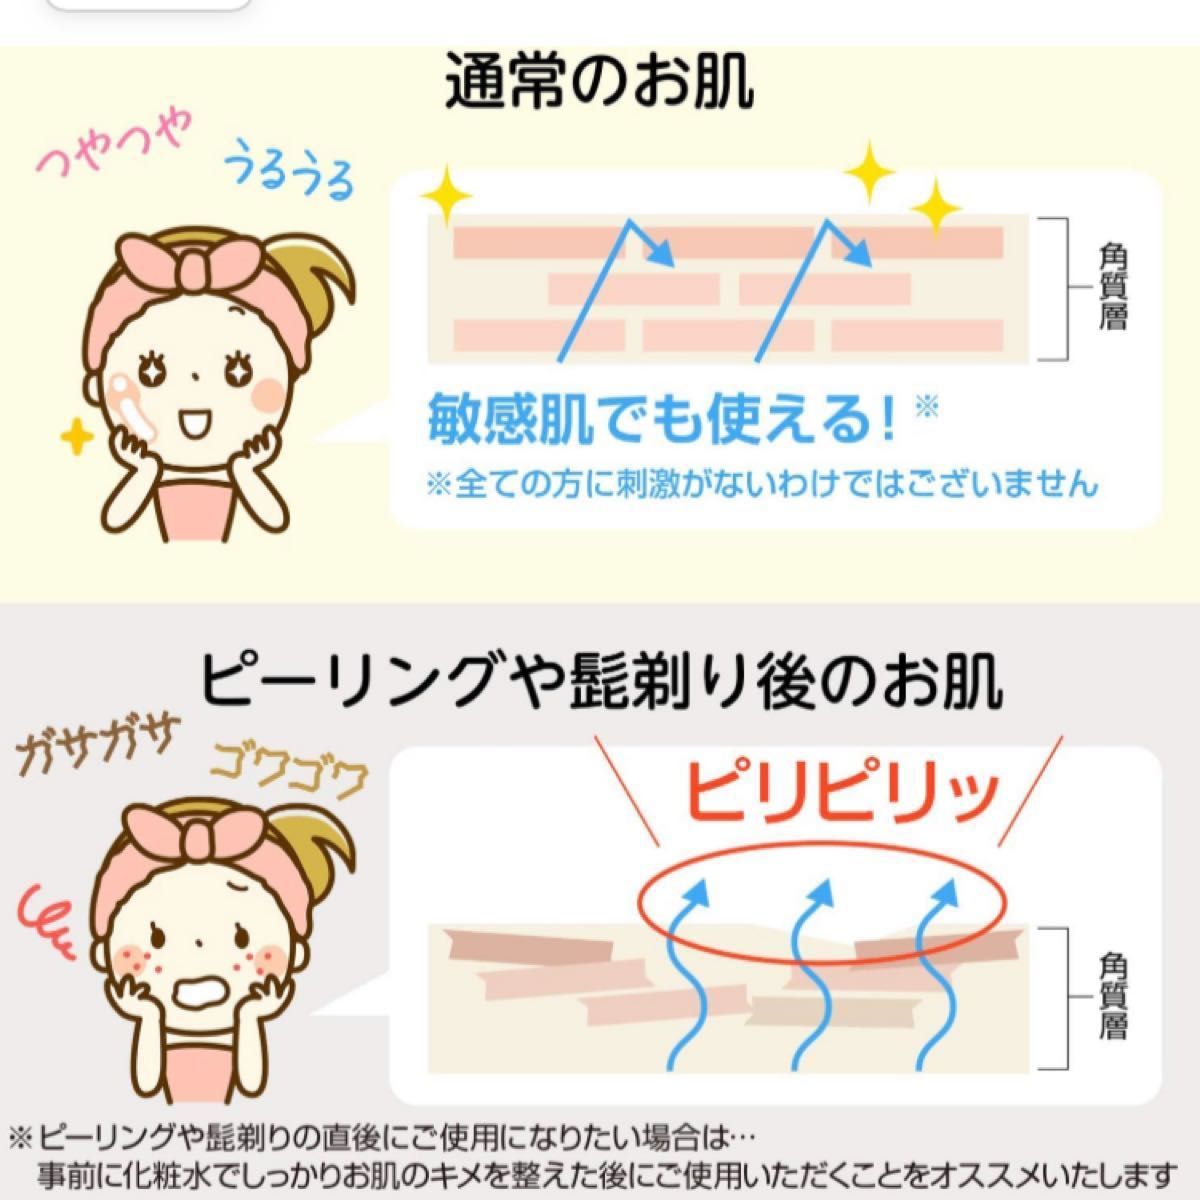 【2個セット】natu-reC(ナチュールシー) ビタミンC美容液 くすみ 乾燥 (30日分 18ml×2個) 日本製